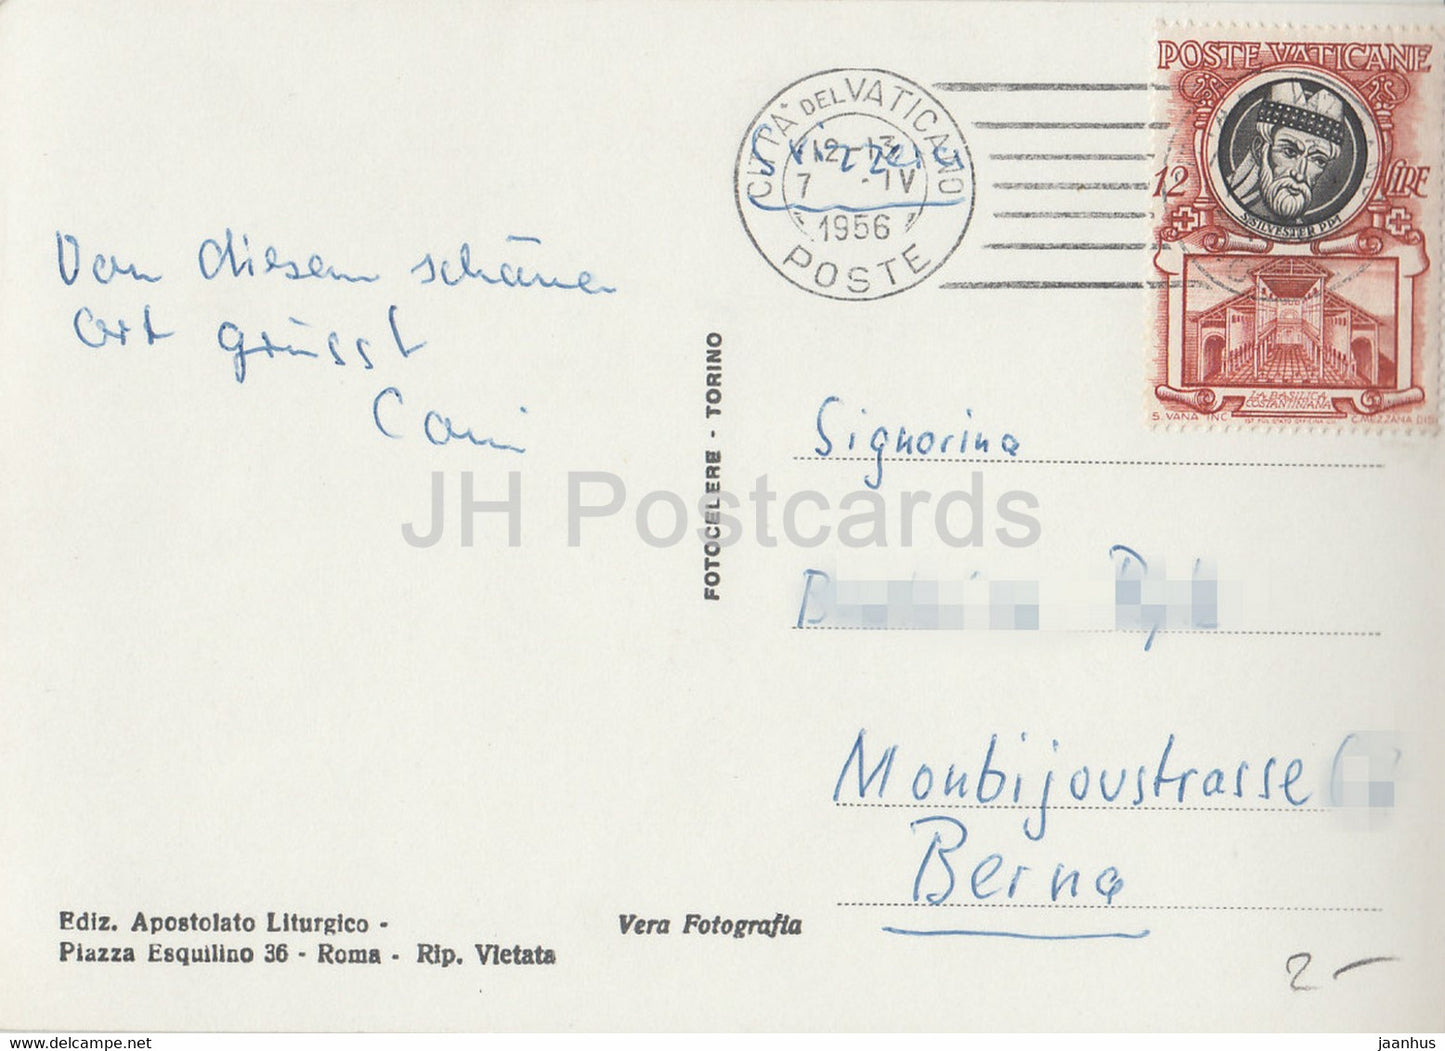 Citta del Vaticano - Basilica e Colonnato del Bernini - cathedral - colonnade - 1956 - old postcard - Vatican - used